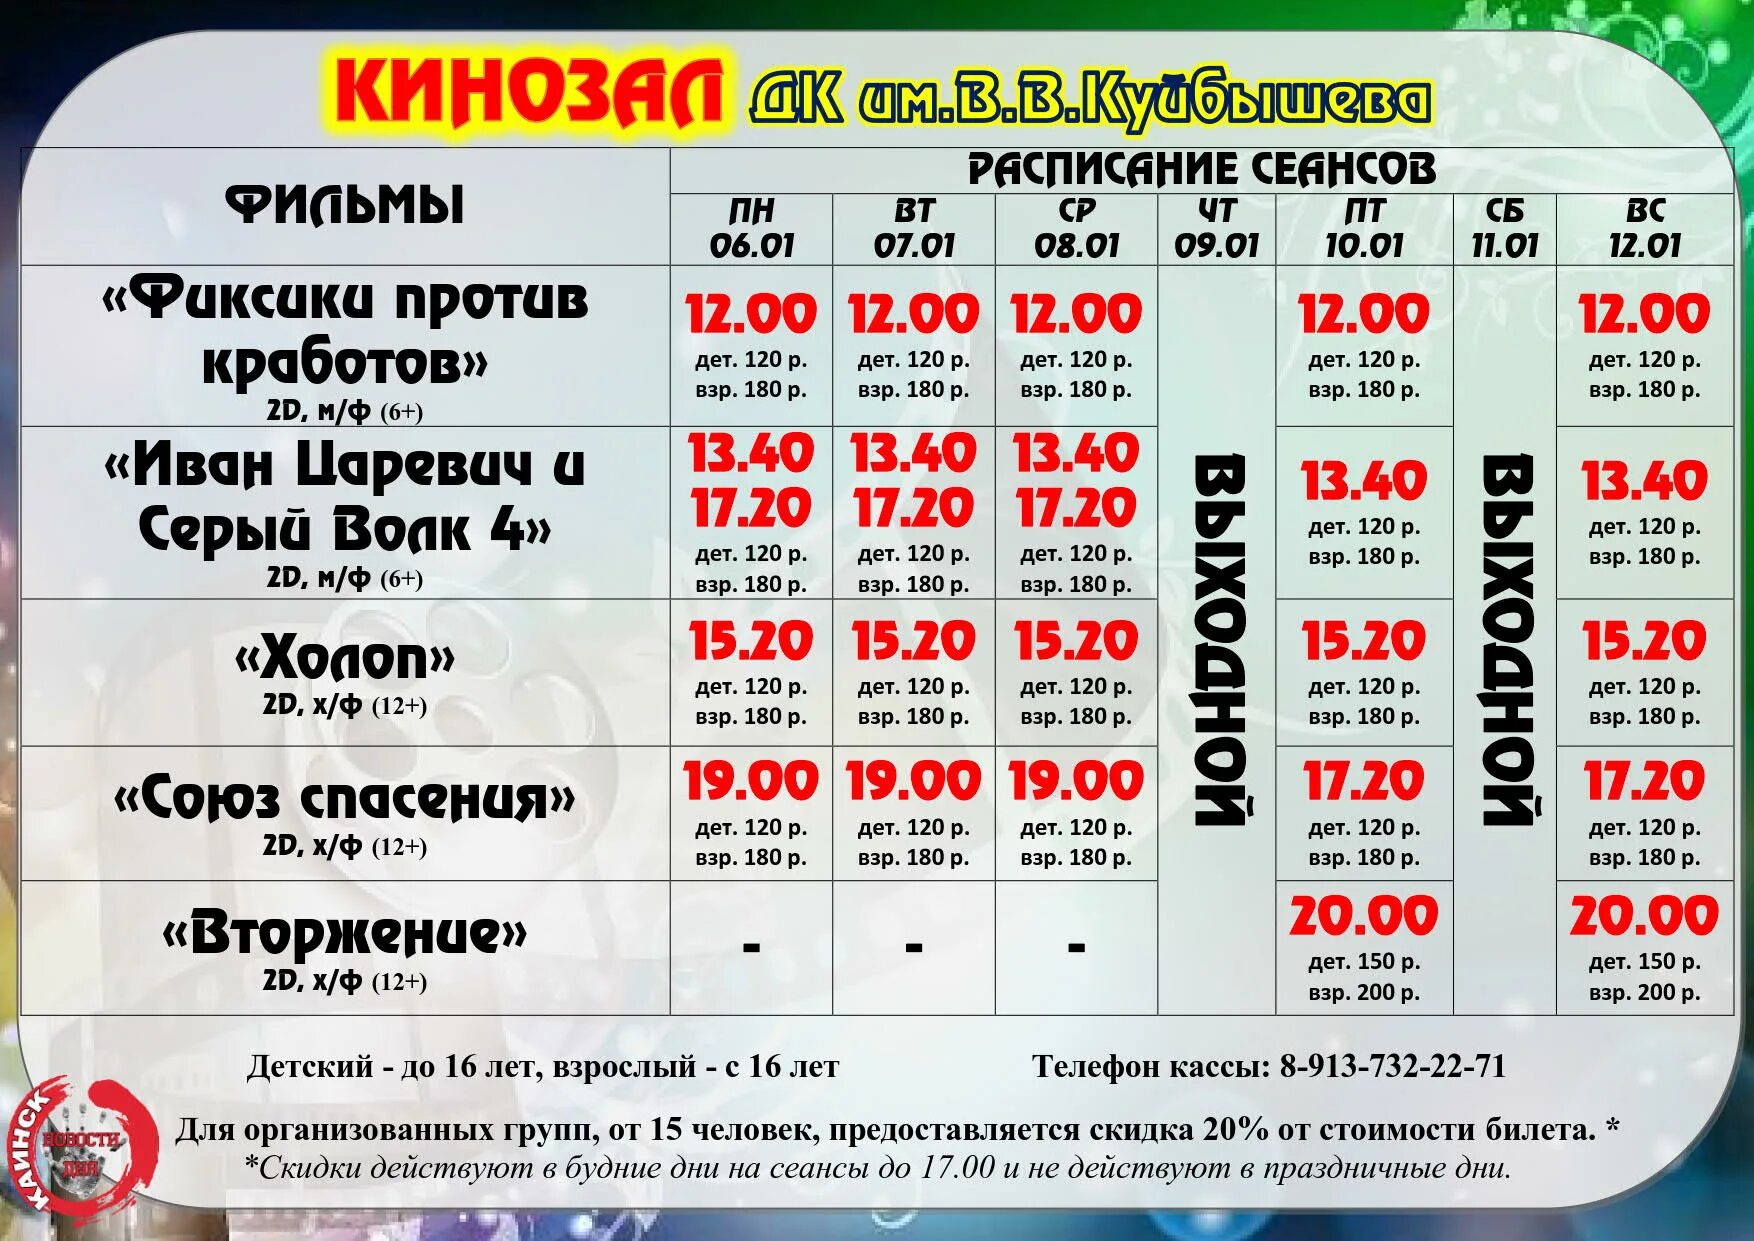 Ереван плаза расписание сеансов на сегодня. Афиша кинотеатра. Расписание сеансов в кинотеатре.